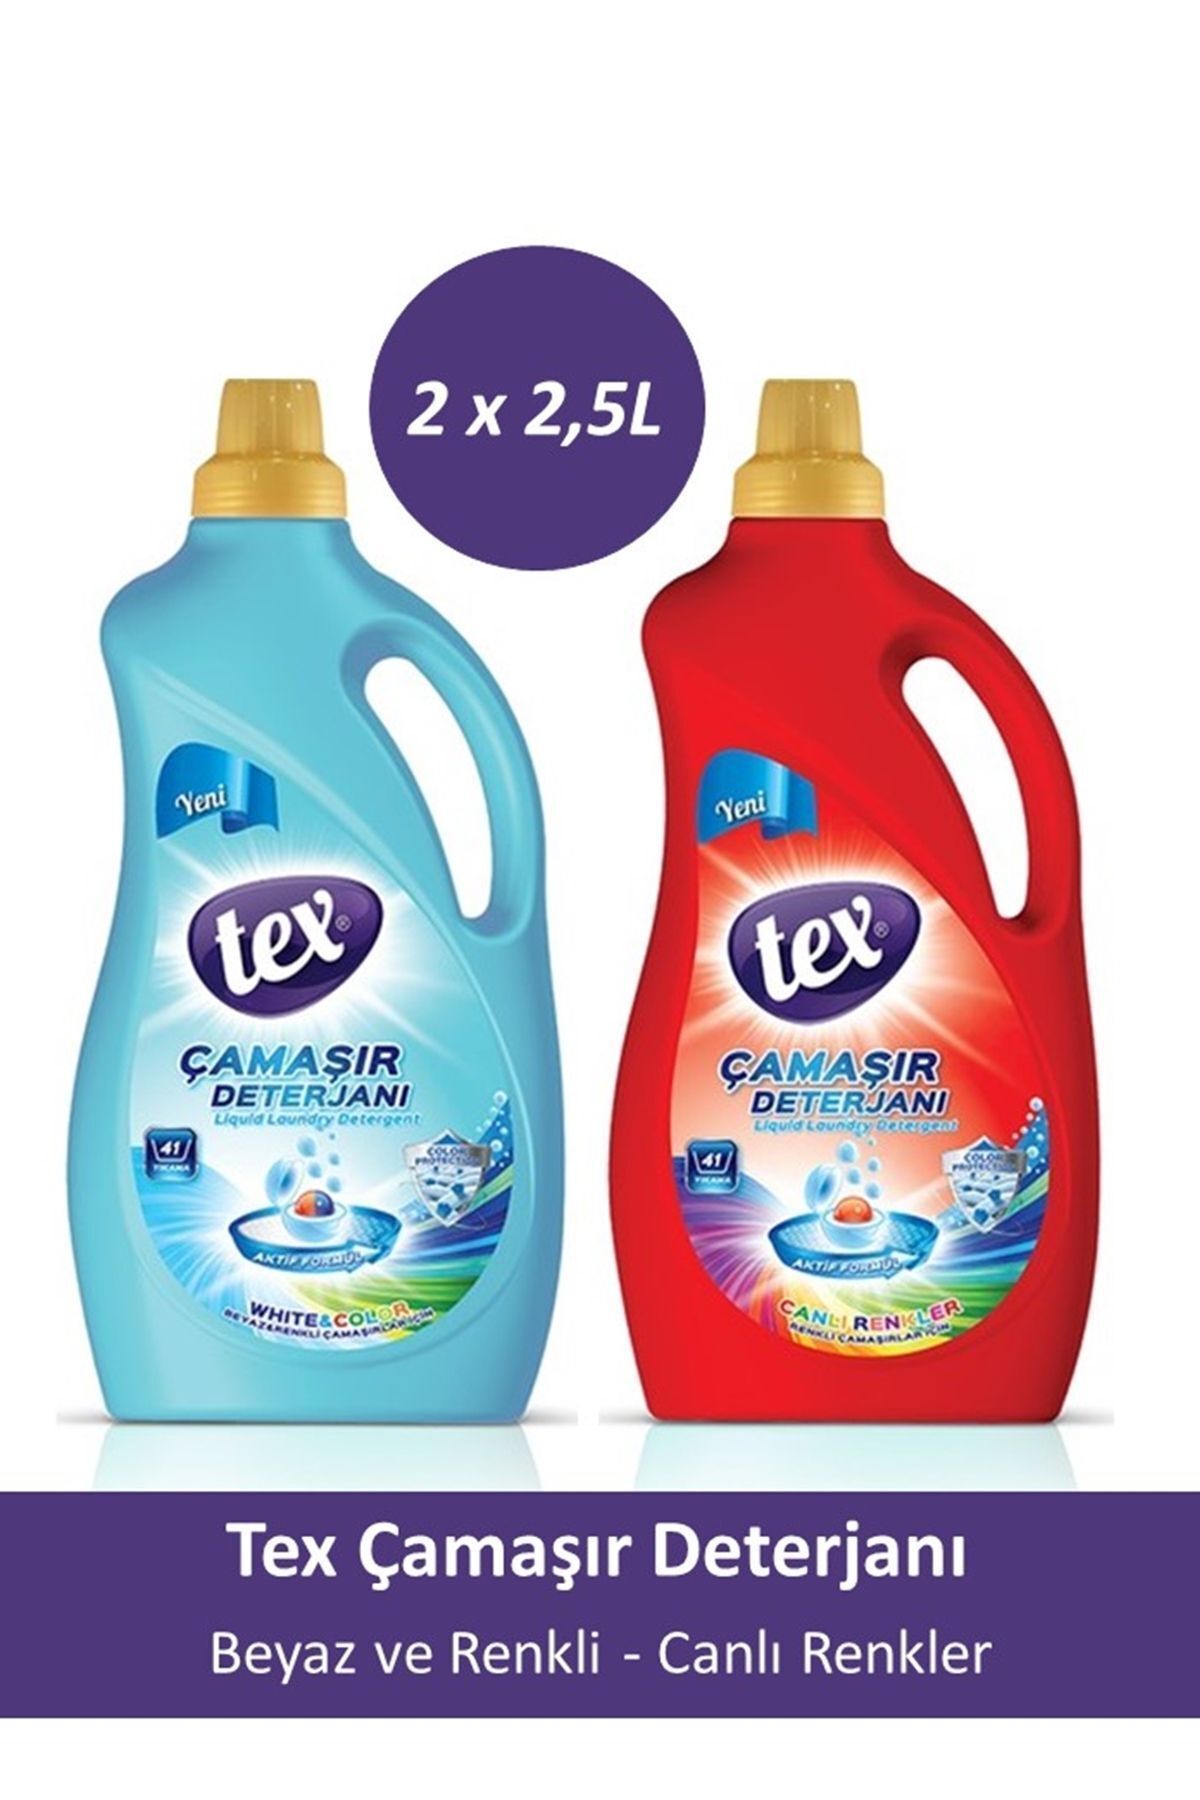 Tex Sıvı Çamaşır Deterjanı Renkliler Ve Beyazlar Canlı Renkler /2 x 2,5L